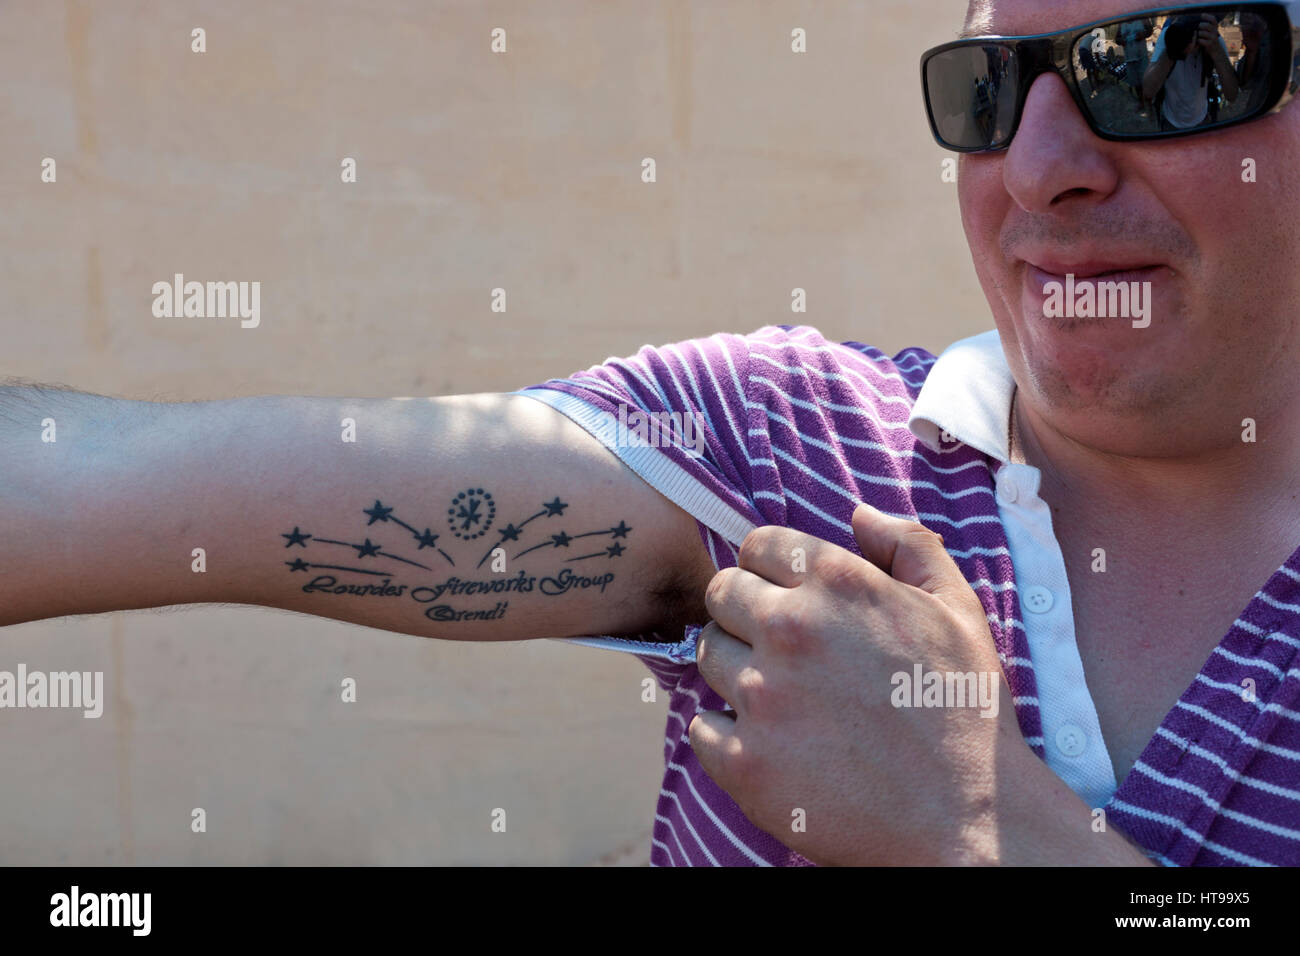 Un pyrtechnician Maltese si mette in mostra il tatuaggio con il logo della fabbrica di fuochi d'artificio che egli fa parte del. Foto Stock